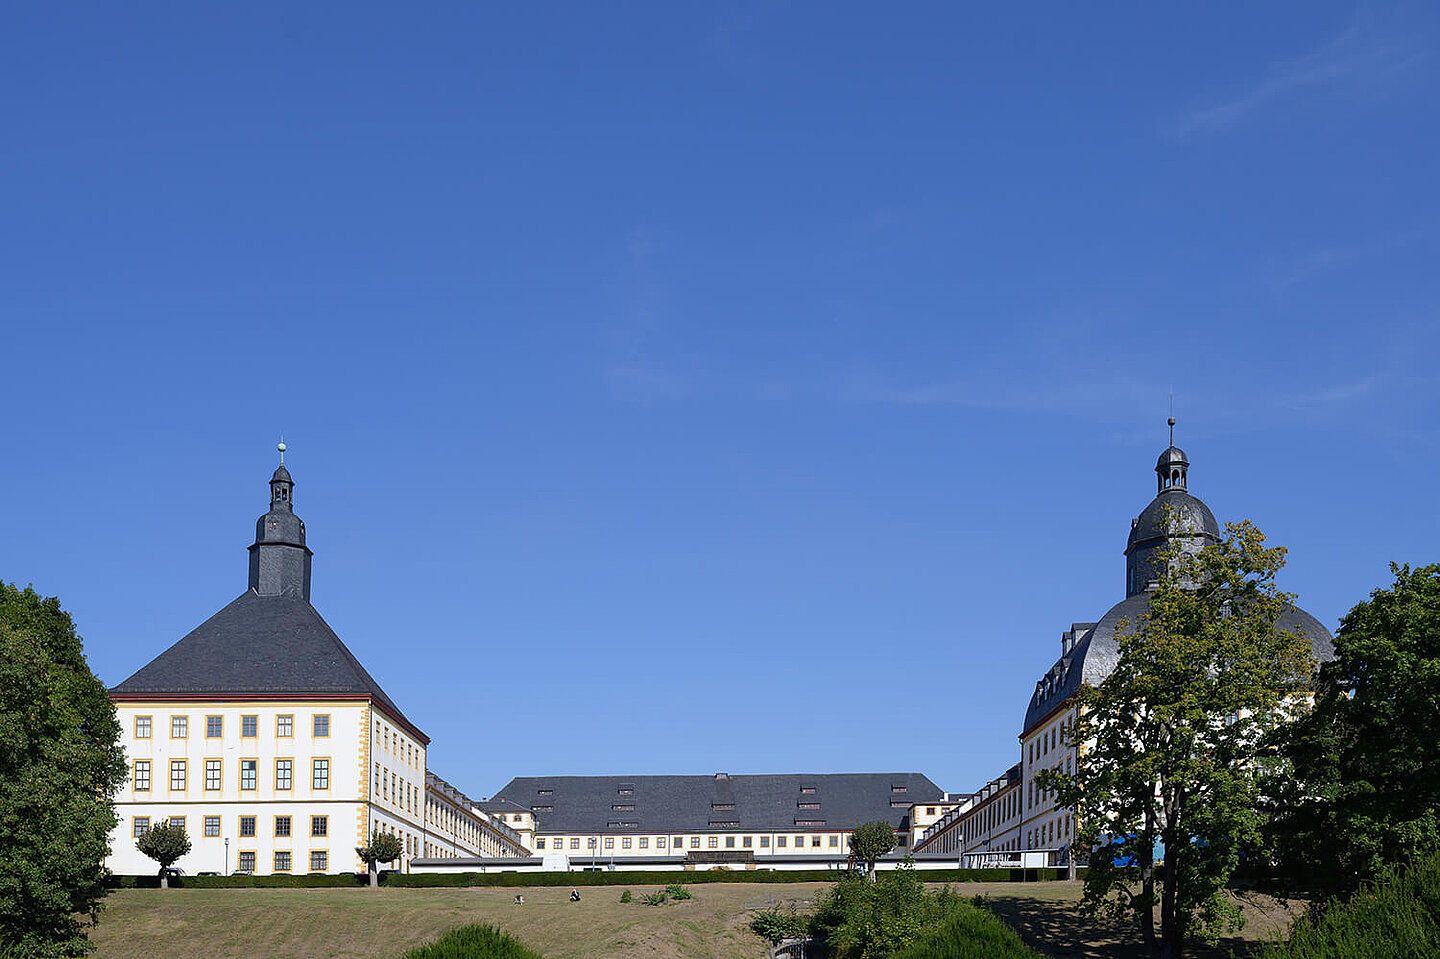 Blick auf Schloss Friedenstein aus der Ferne